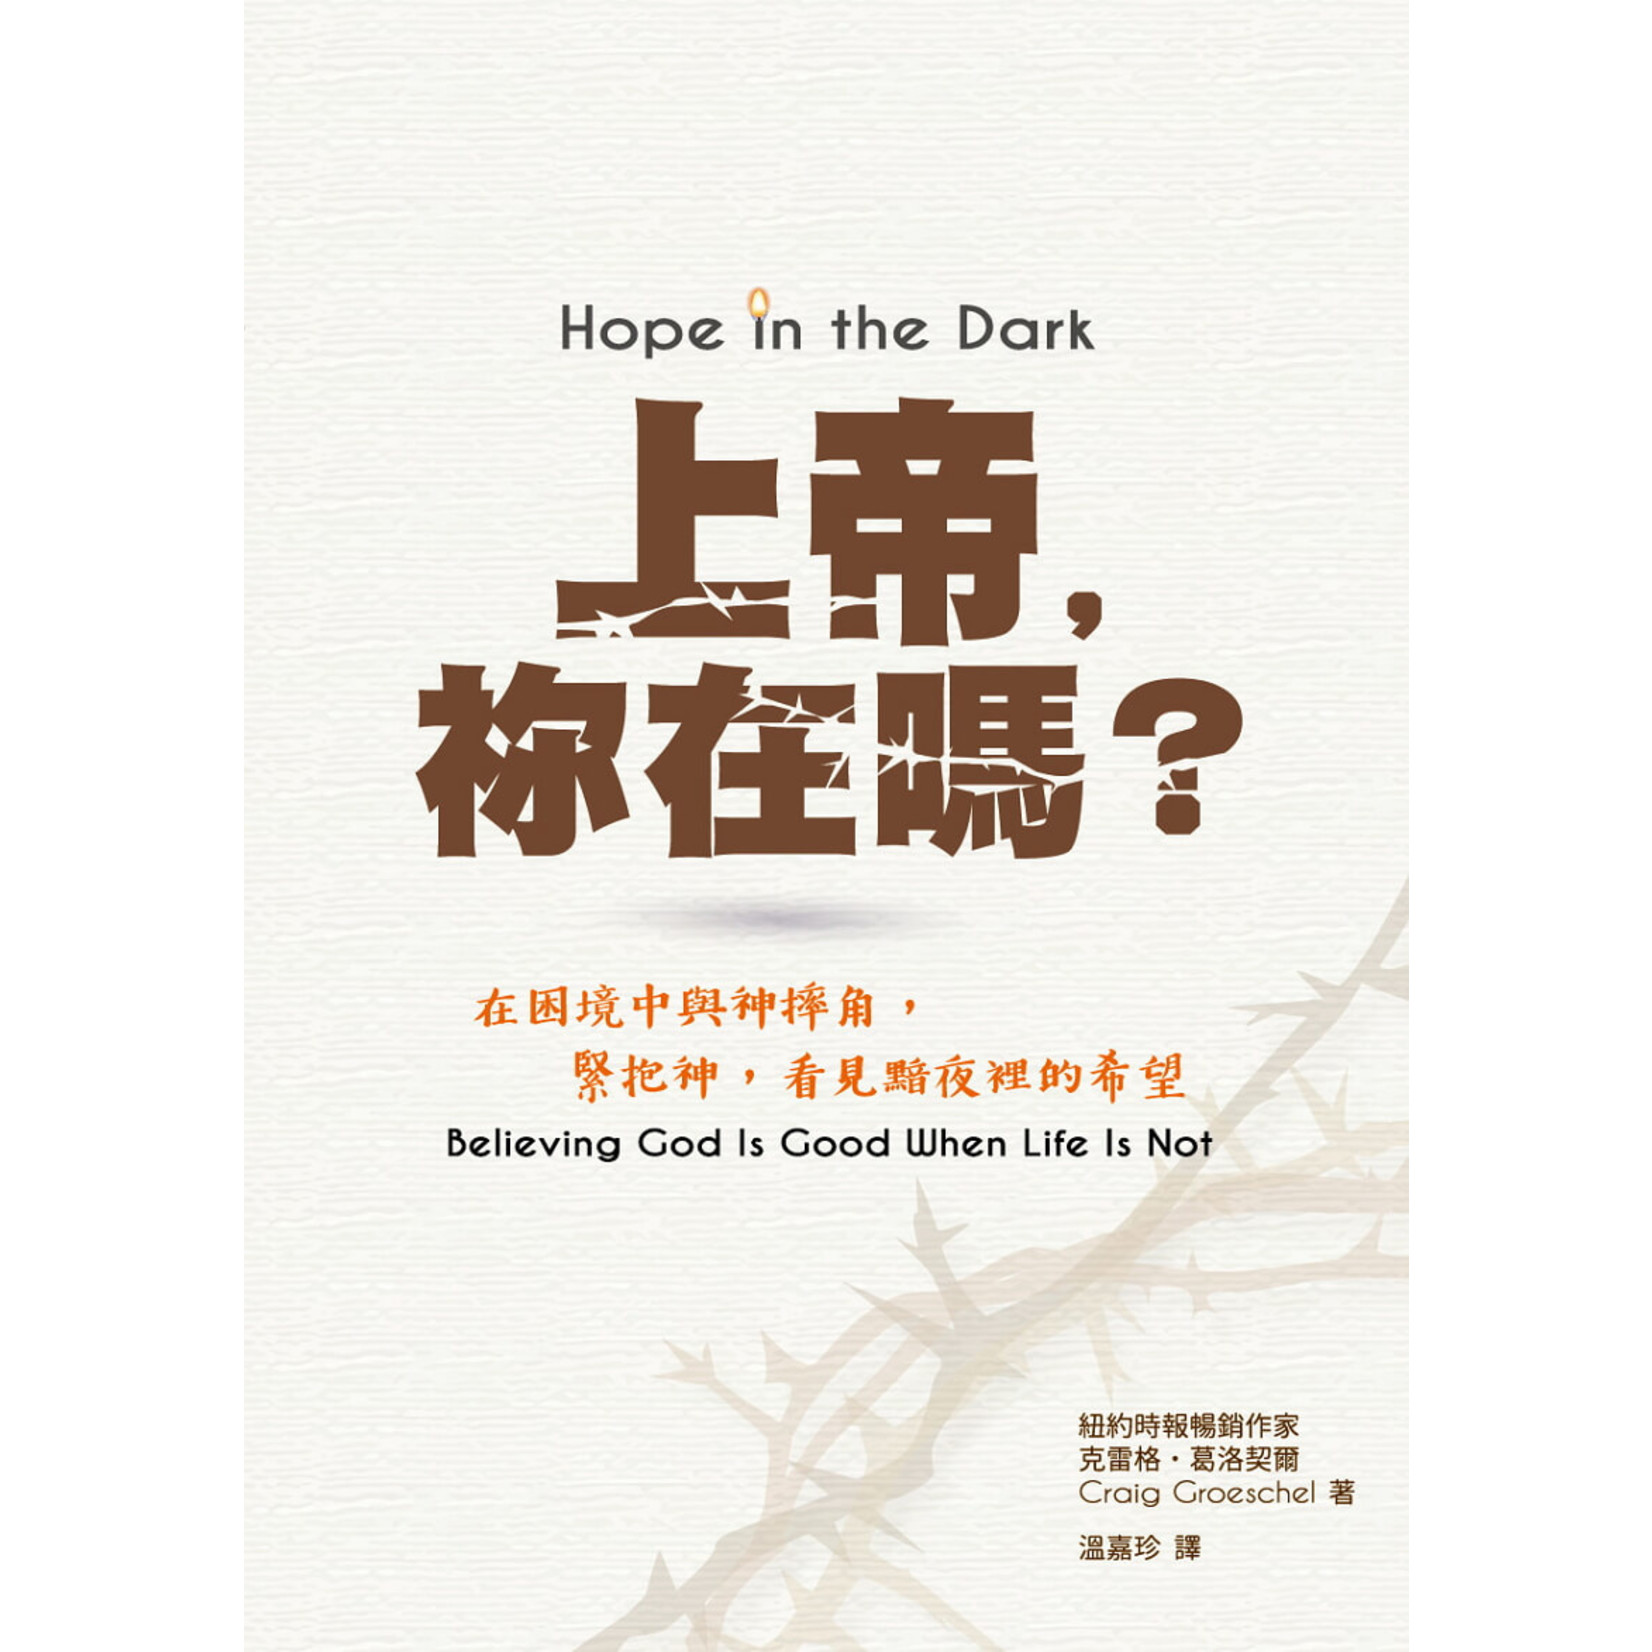 中國學園傳道會 Taiwan Campus Crusade for Christ 上帝，祢在嗎？：在困境中與神摔角，緊抱上帝，看見黯夜裡的希望 Hope in the Dark